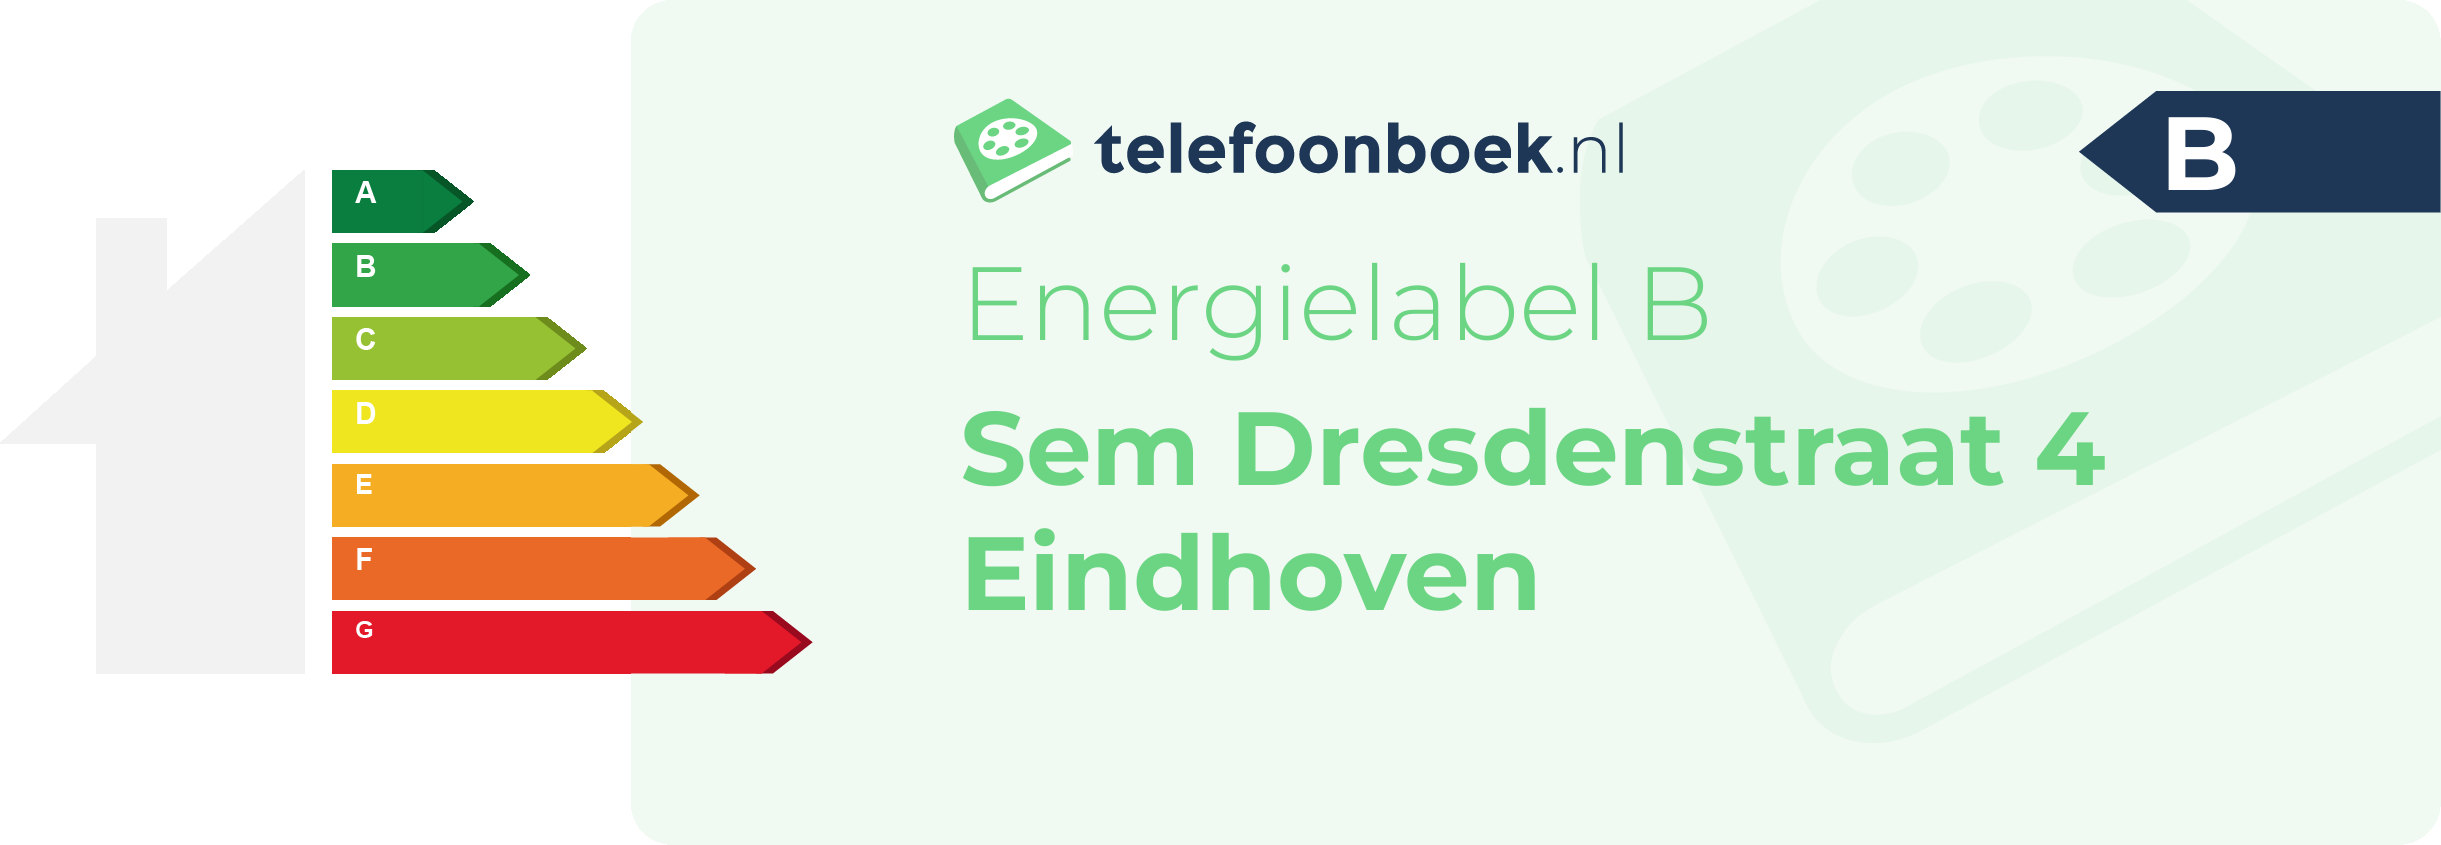 Energielabel Sem Dresdenstraat 4 Eindhoven